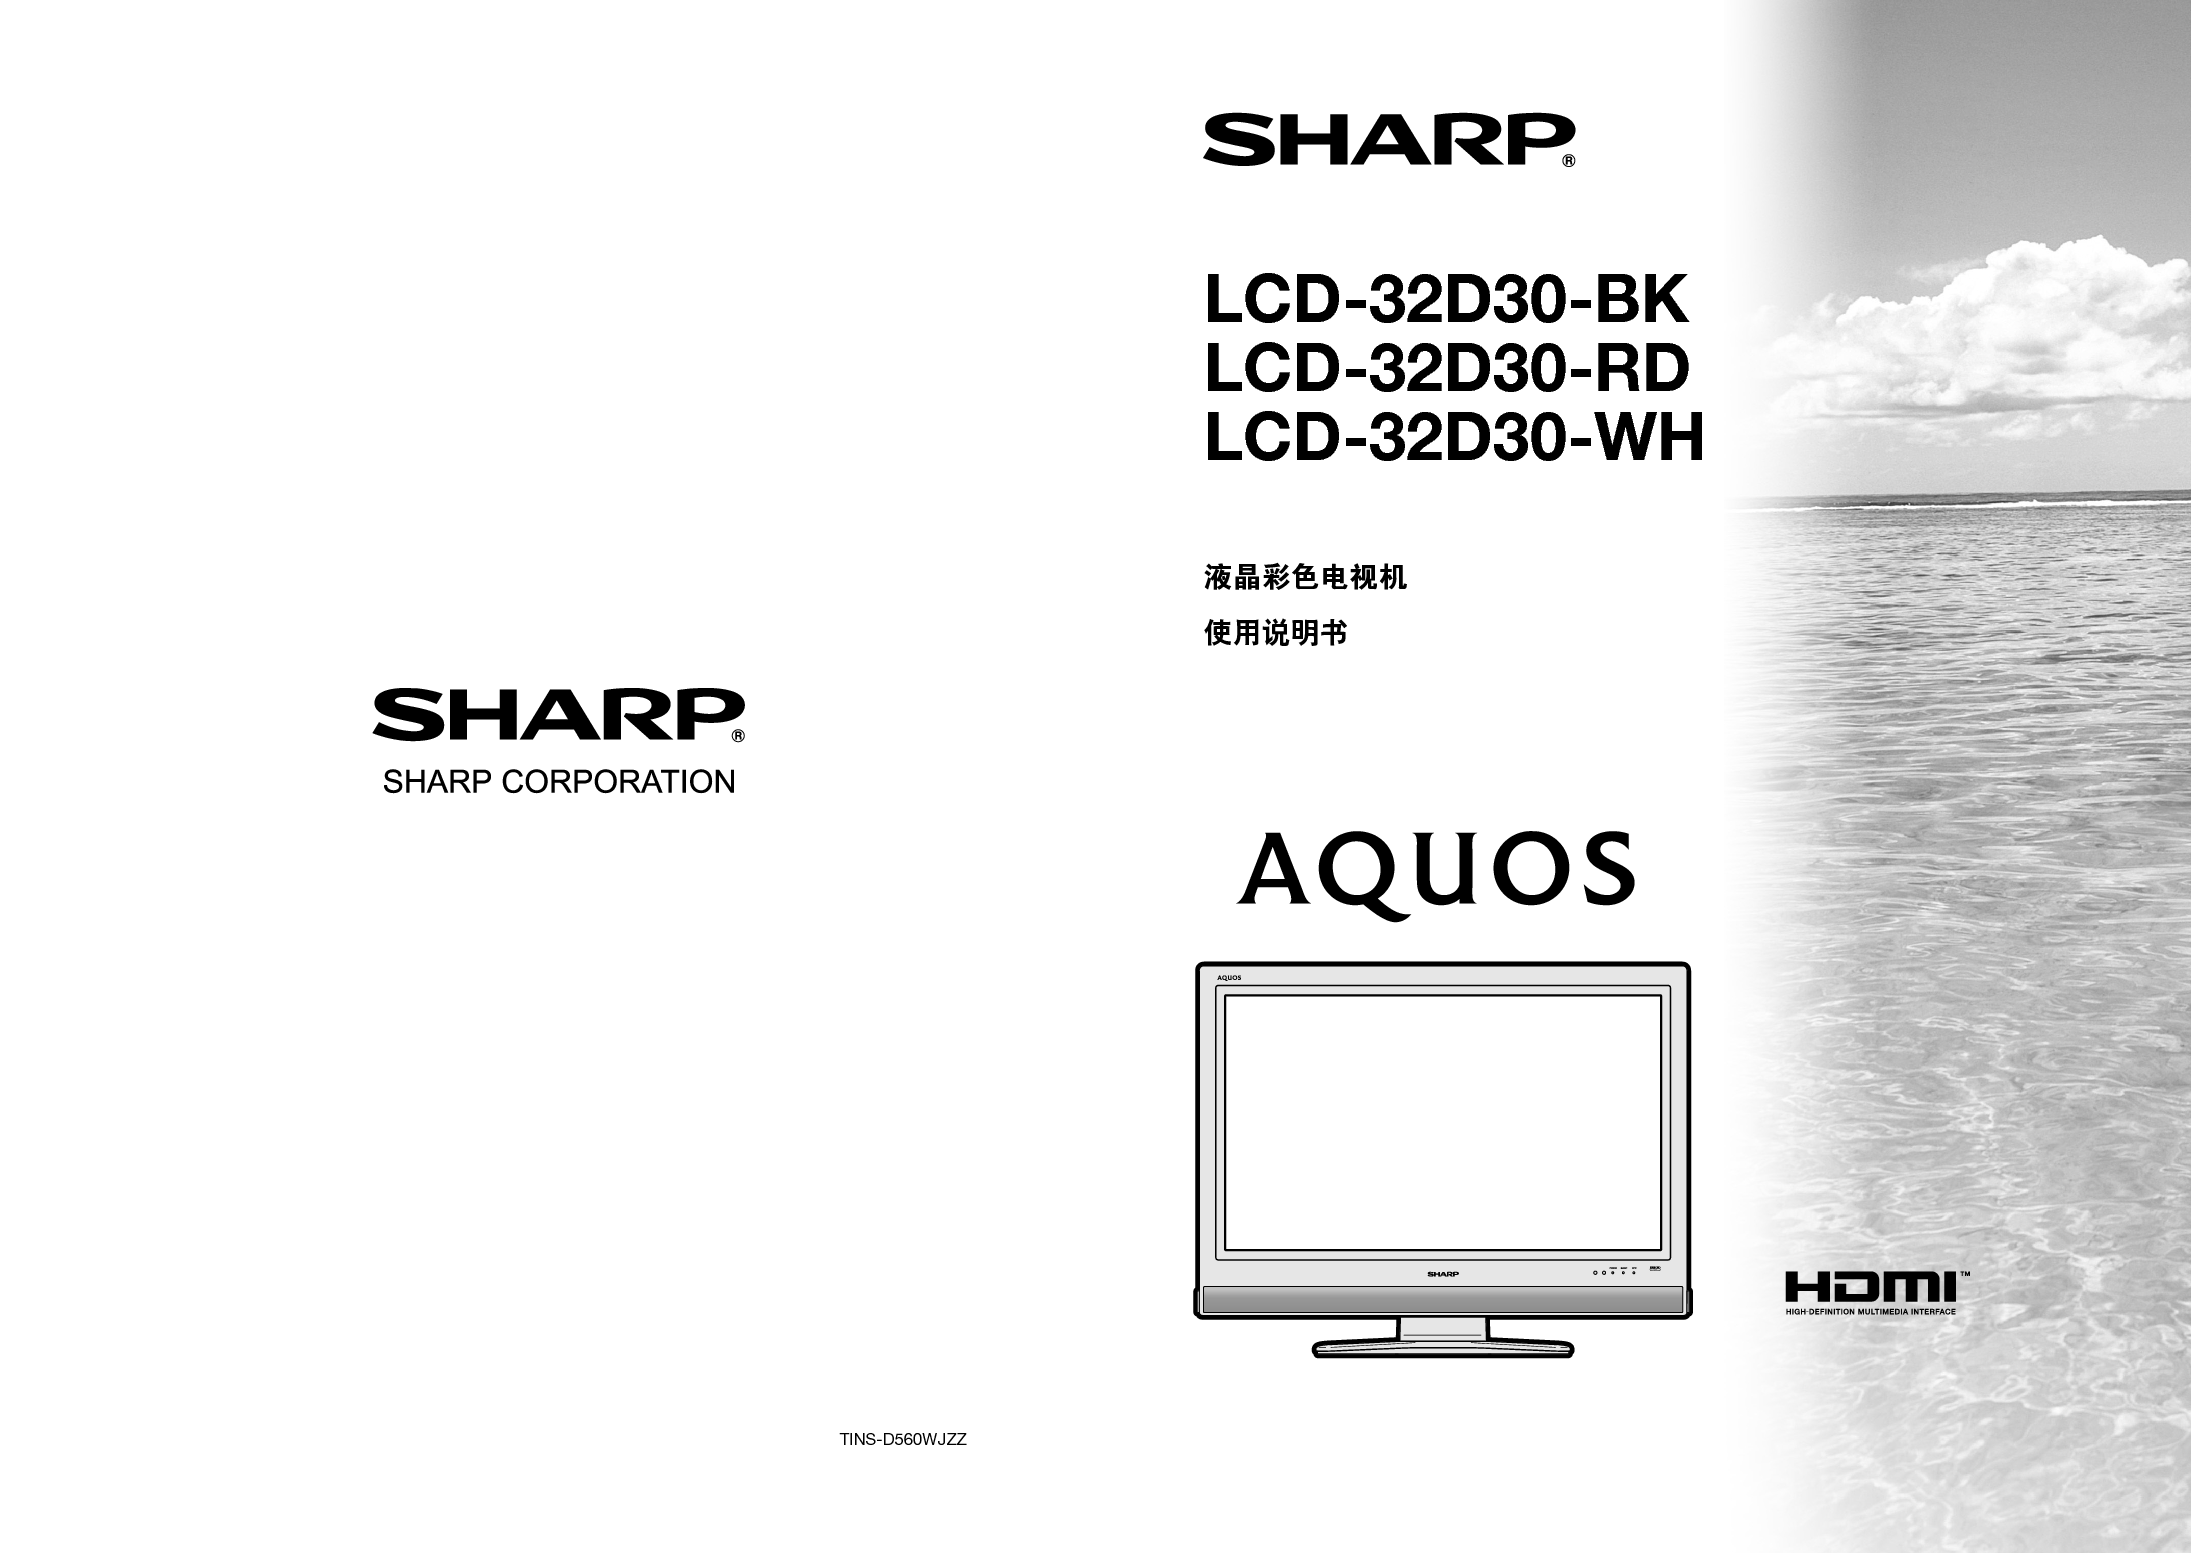 夏普 Sharp LCD-32D30 说明书 封面